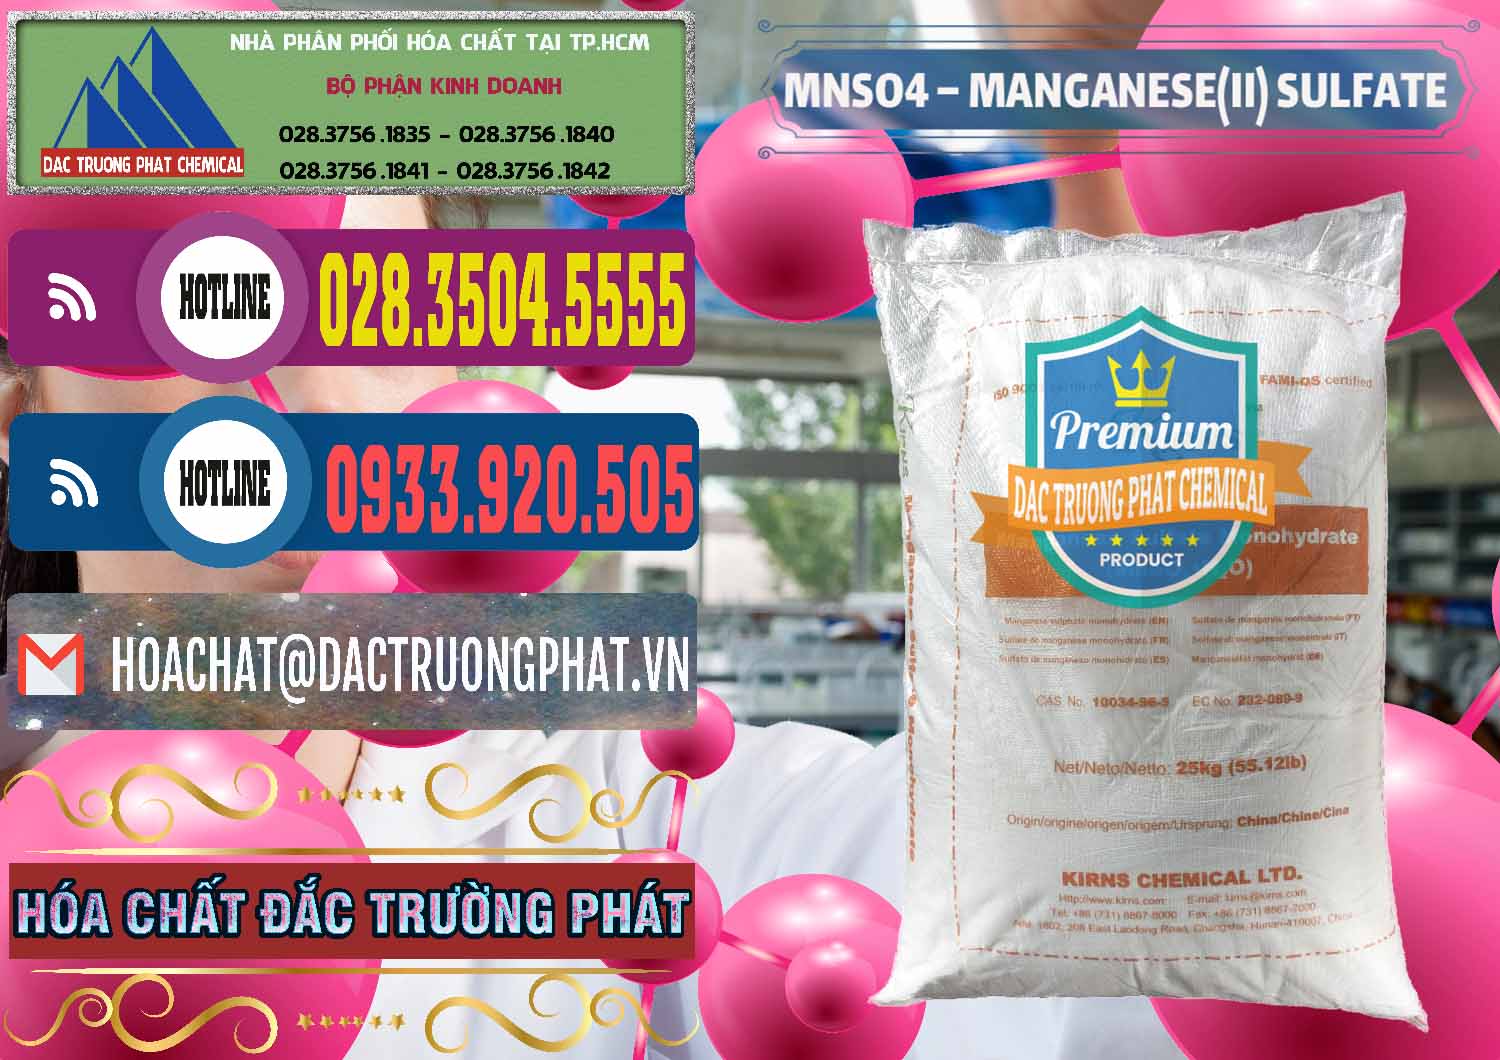 Nơi cung ứng & bán MNSO4 – Manganese (II) Sulfate Kirns Trung Quốc China - 0095 - Chuyên phân phối - bán hóa chất tại TP.HCM - muabanhoachat.com.vn